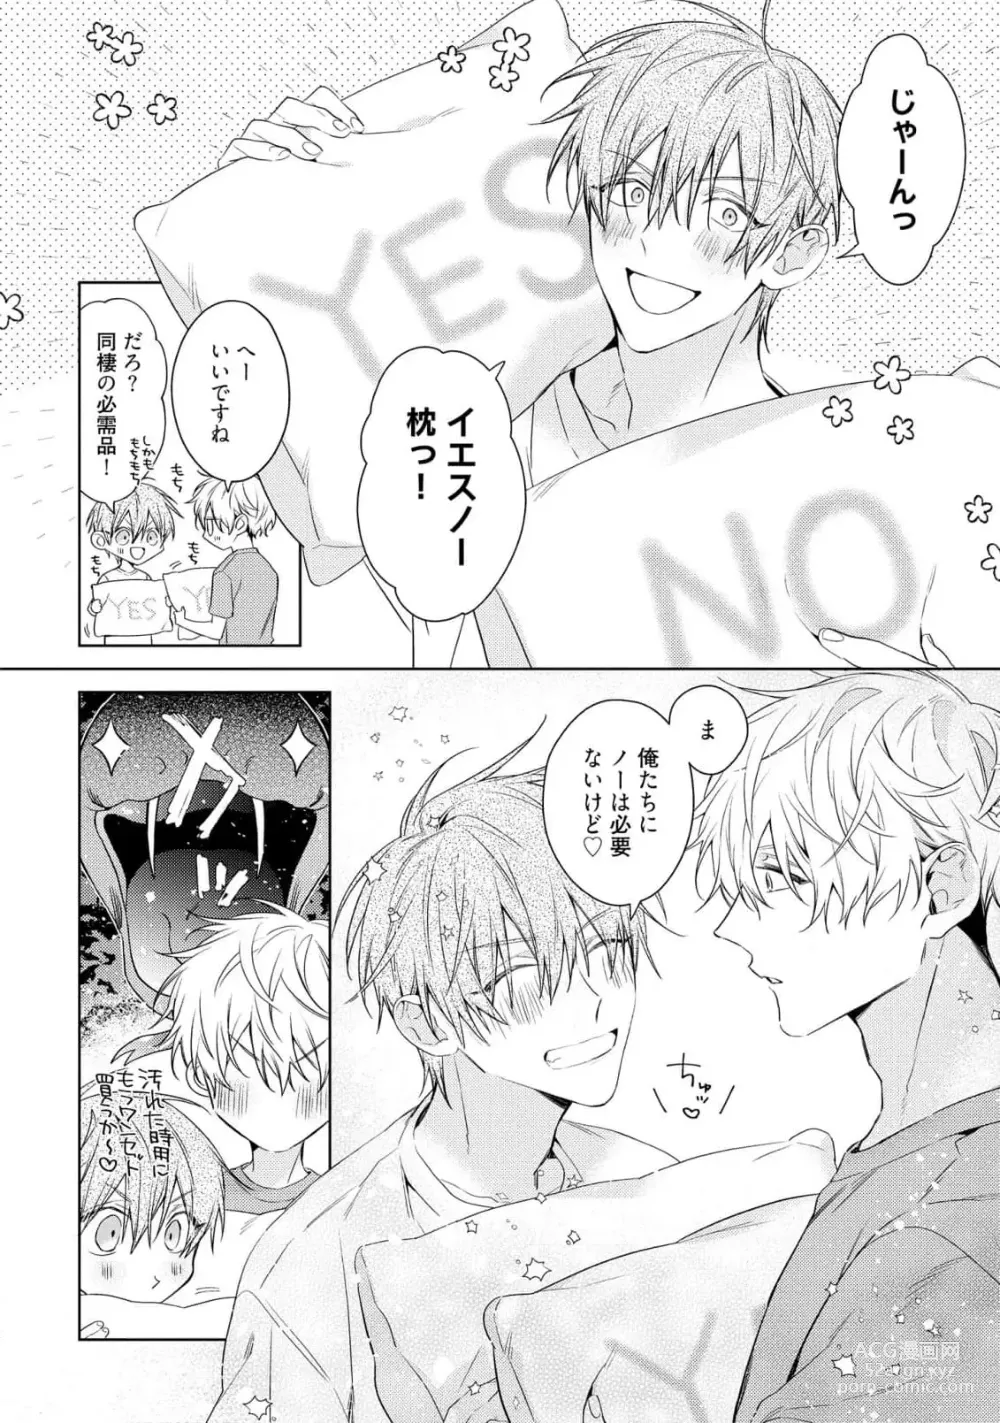 Page 12 of manga Motto! Ecchi wa shuu 7 Kibou Desu!